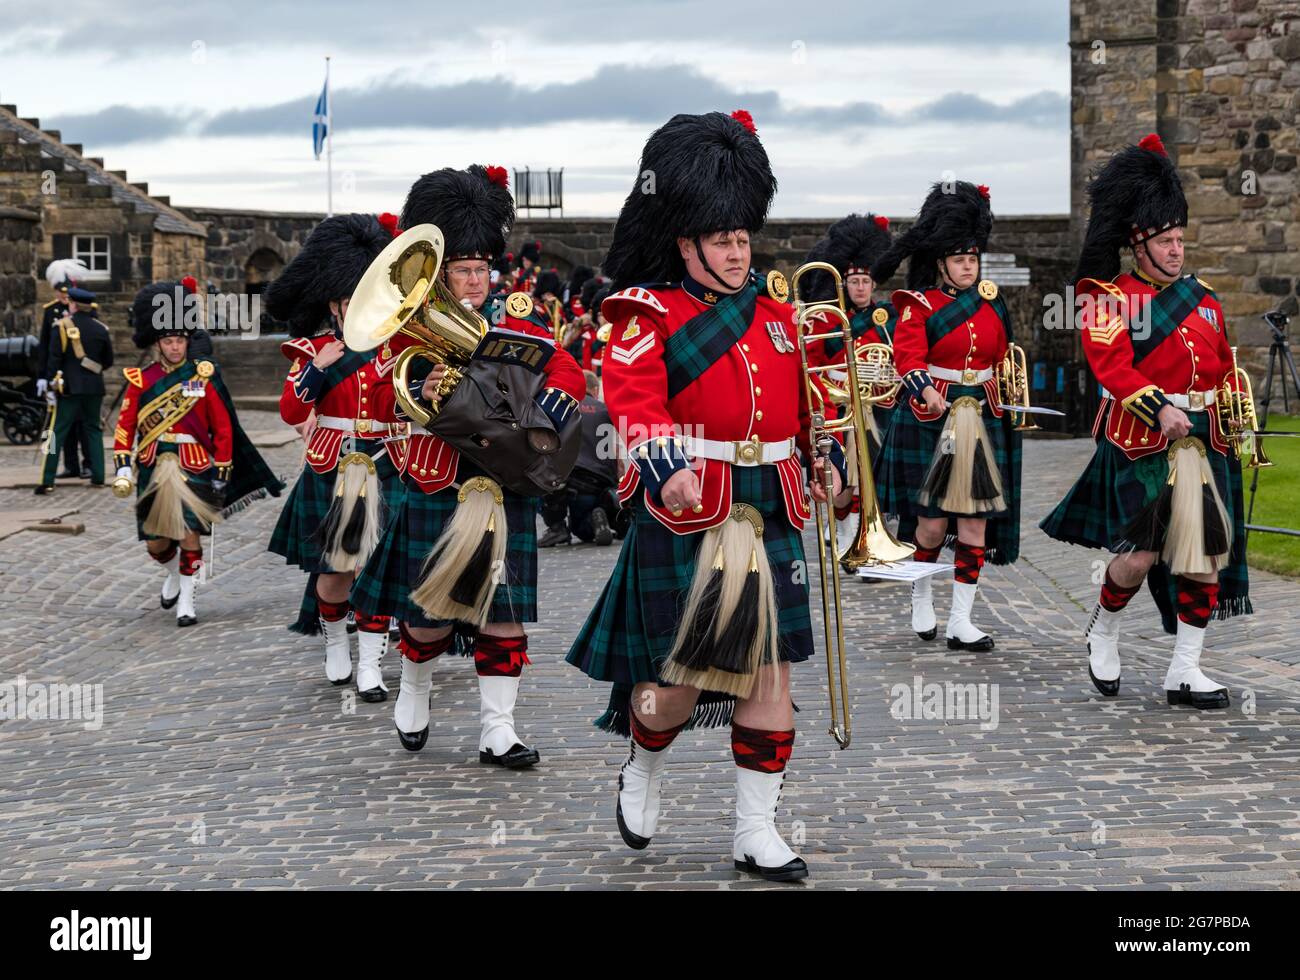 Gruppo scozzese di ottone reggimento militare in uniformi kilt che marciano in cerimonia, Castello di Edimburgo, Scozia, Regno Unito Foto Stock